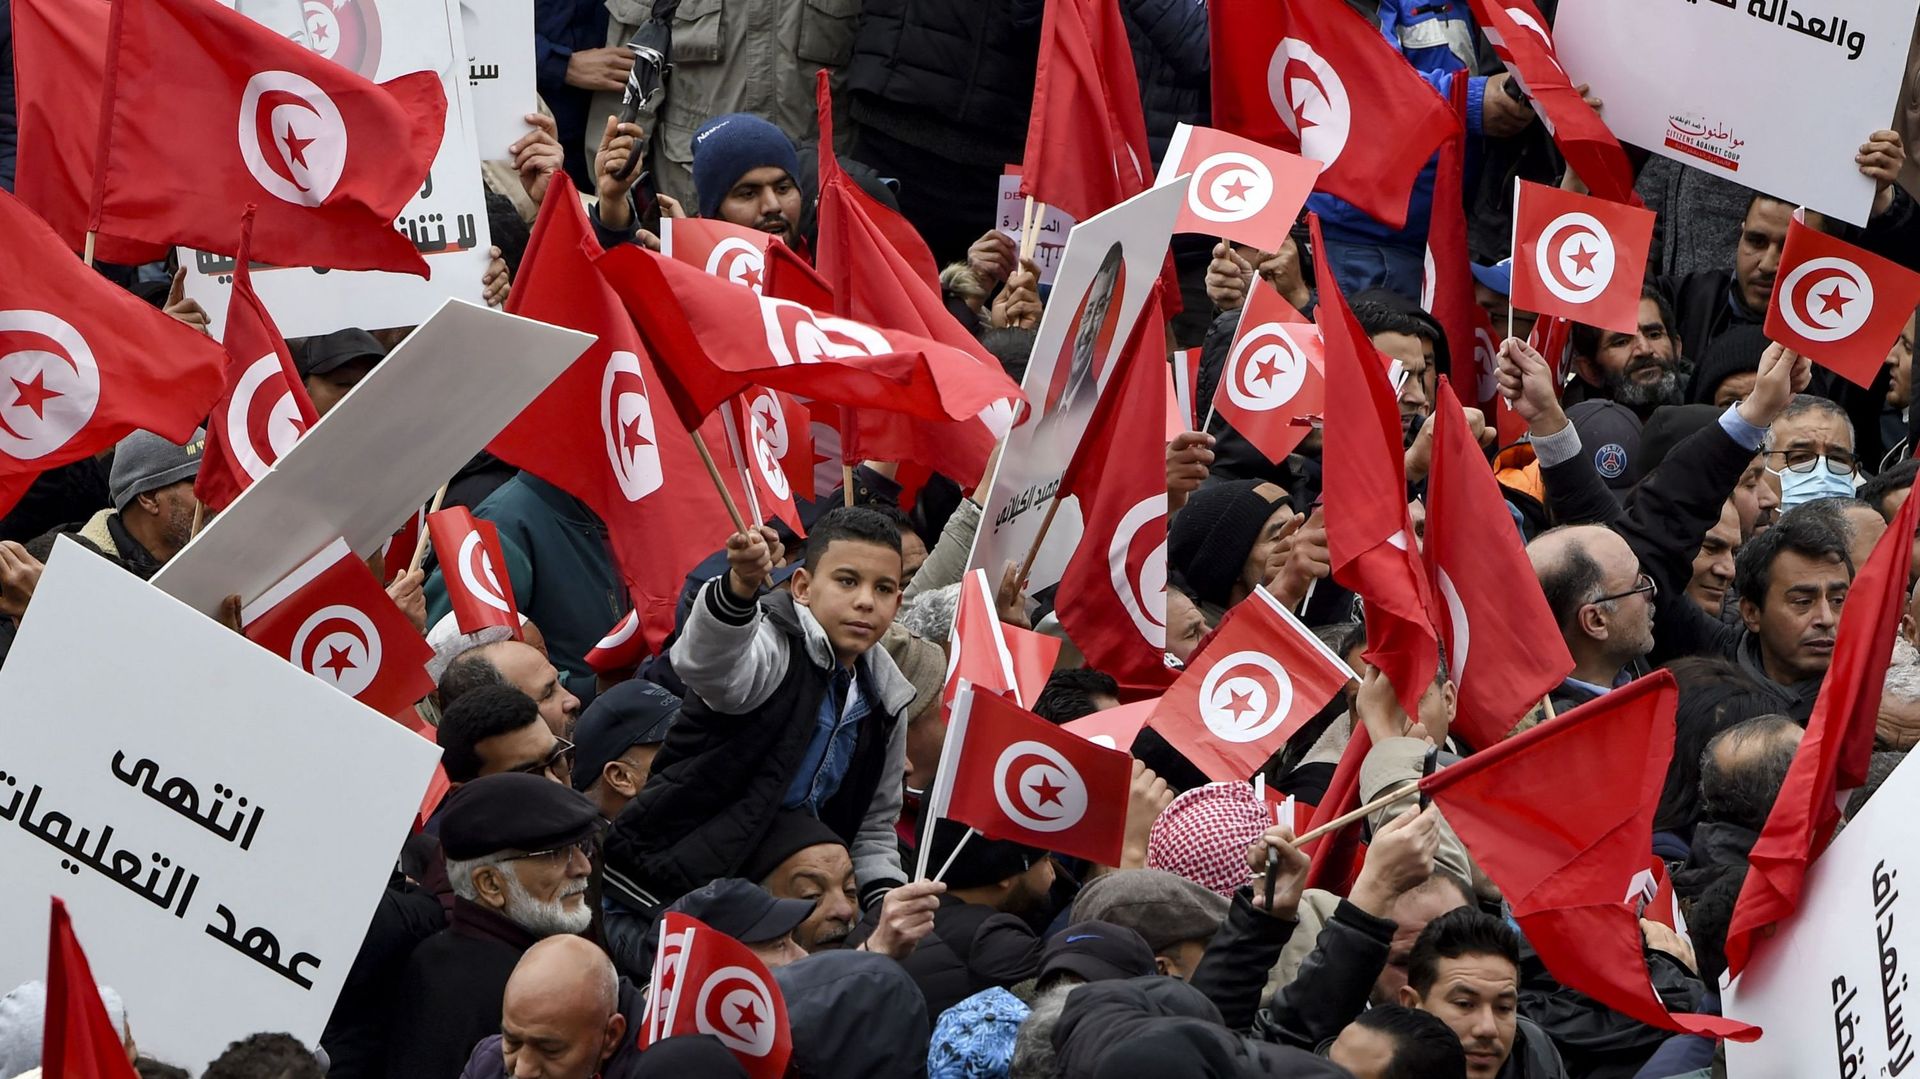 Des manifestants tunisiens brandissent des pancartes et des drapeaux nationaux lors d’une manifestation contre leur président, non loin du siège de l’Assemblée tunisienne (parlement), dans la capitale Tunis, le 20 mars 2022.